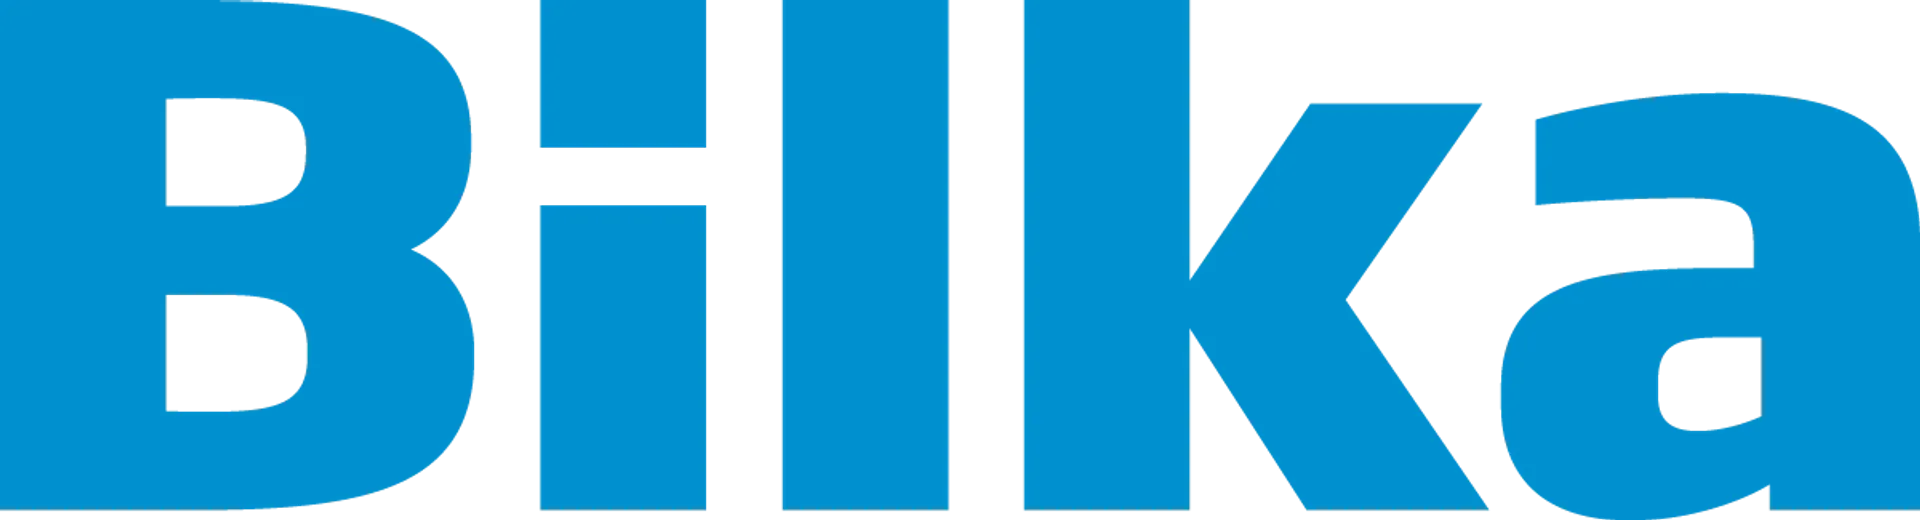 BILKA logo